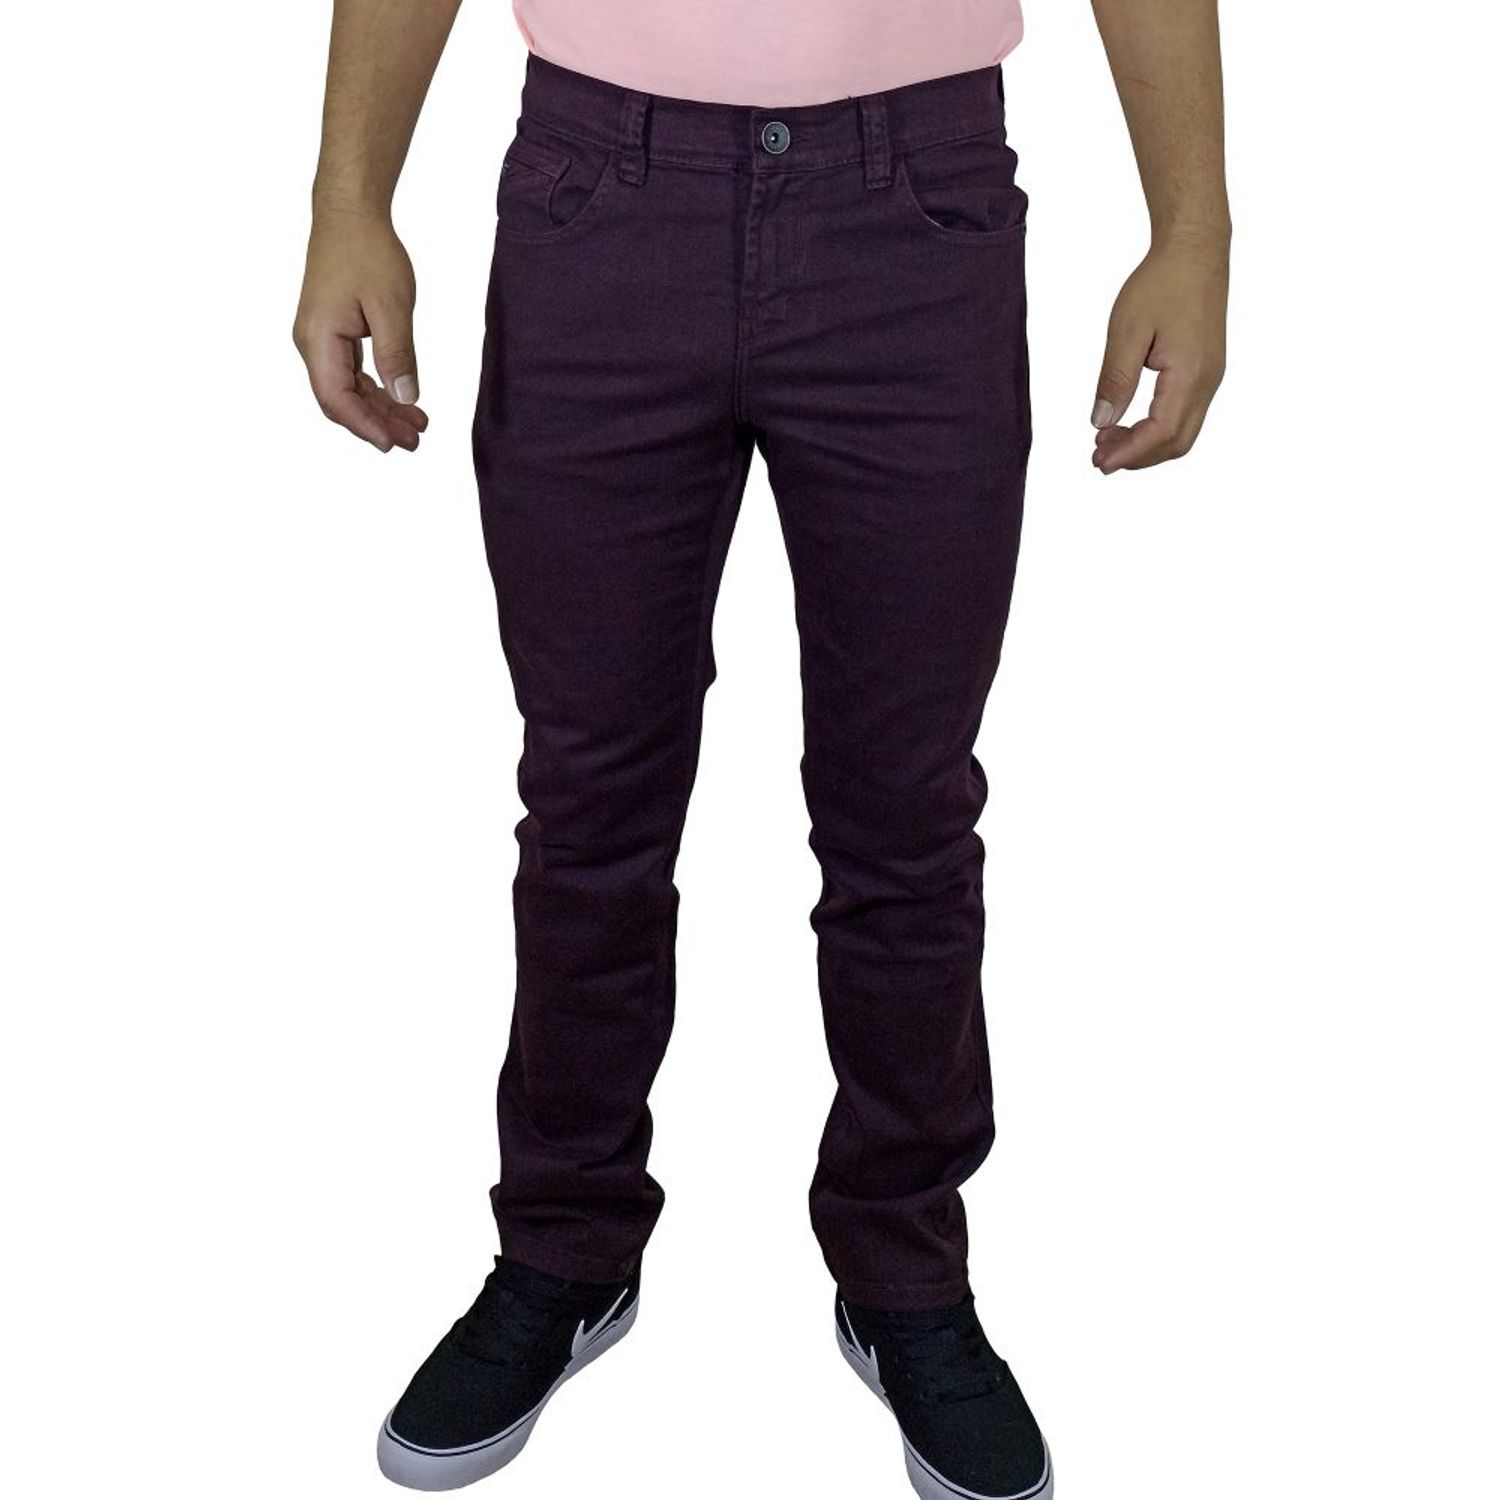 Las mejores ofertas en Adidas Hombres Pantalones para hacer ejercicio  púrpura Ropa Deportiva para Hombres